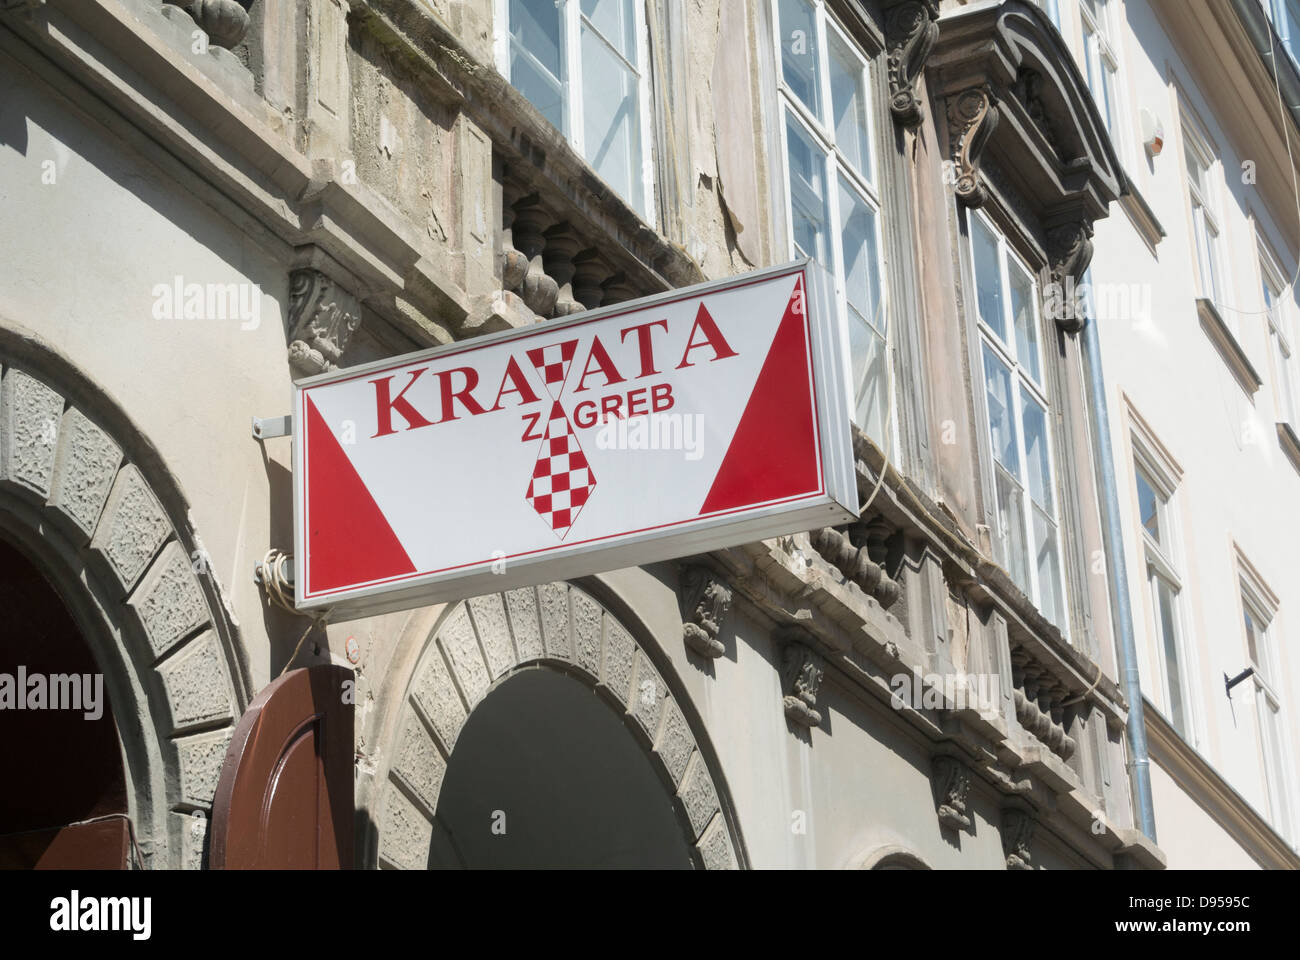 Signo de amarre (kravata tradicional), tienda, centro de la ciudad de Zagreb, Croacia Foto de stock